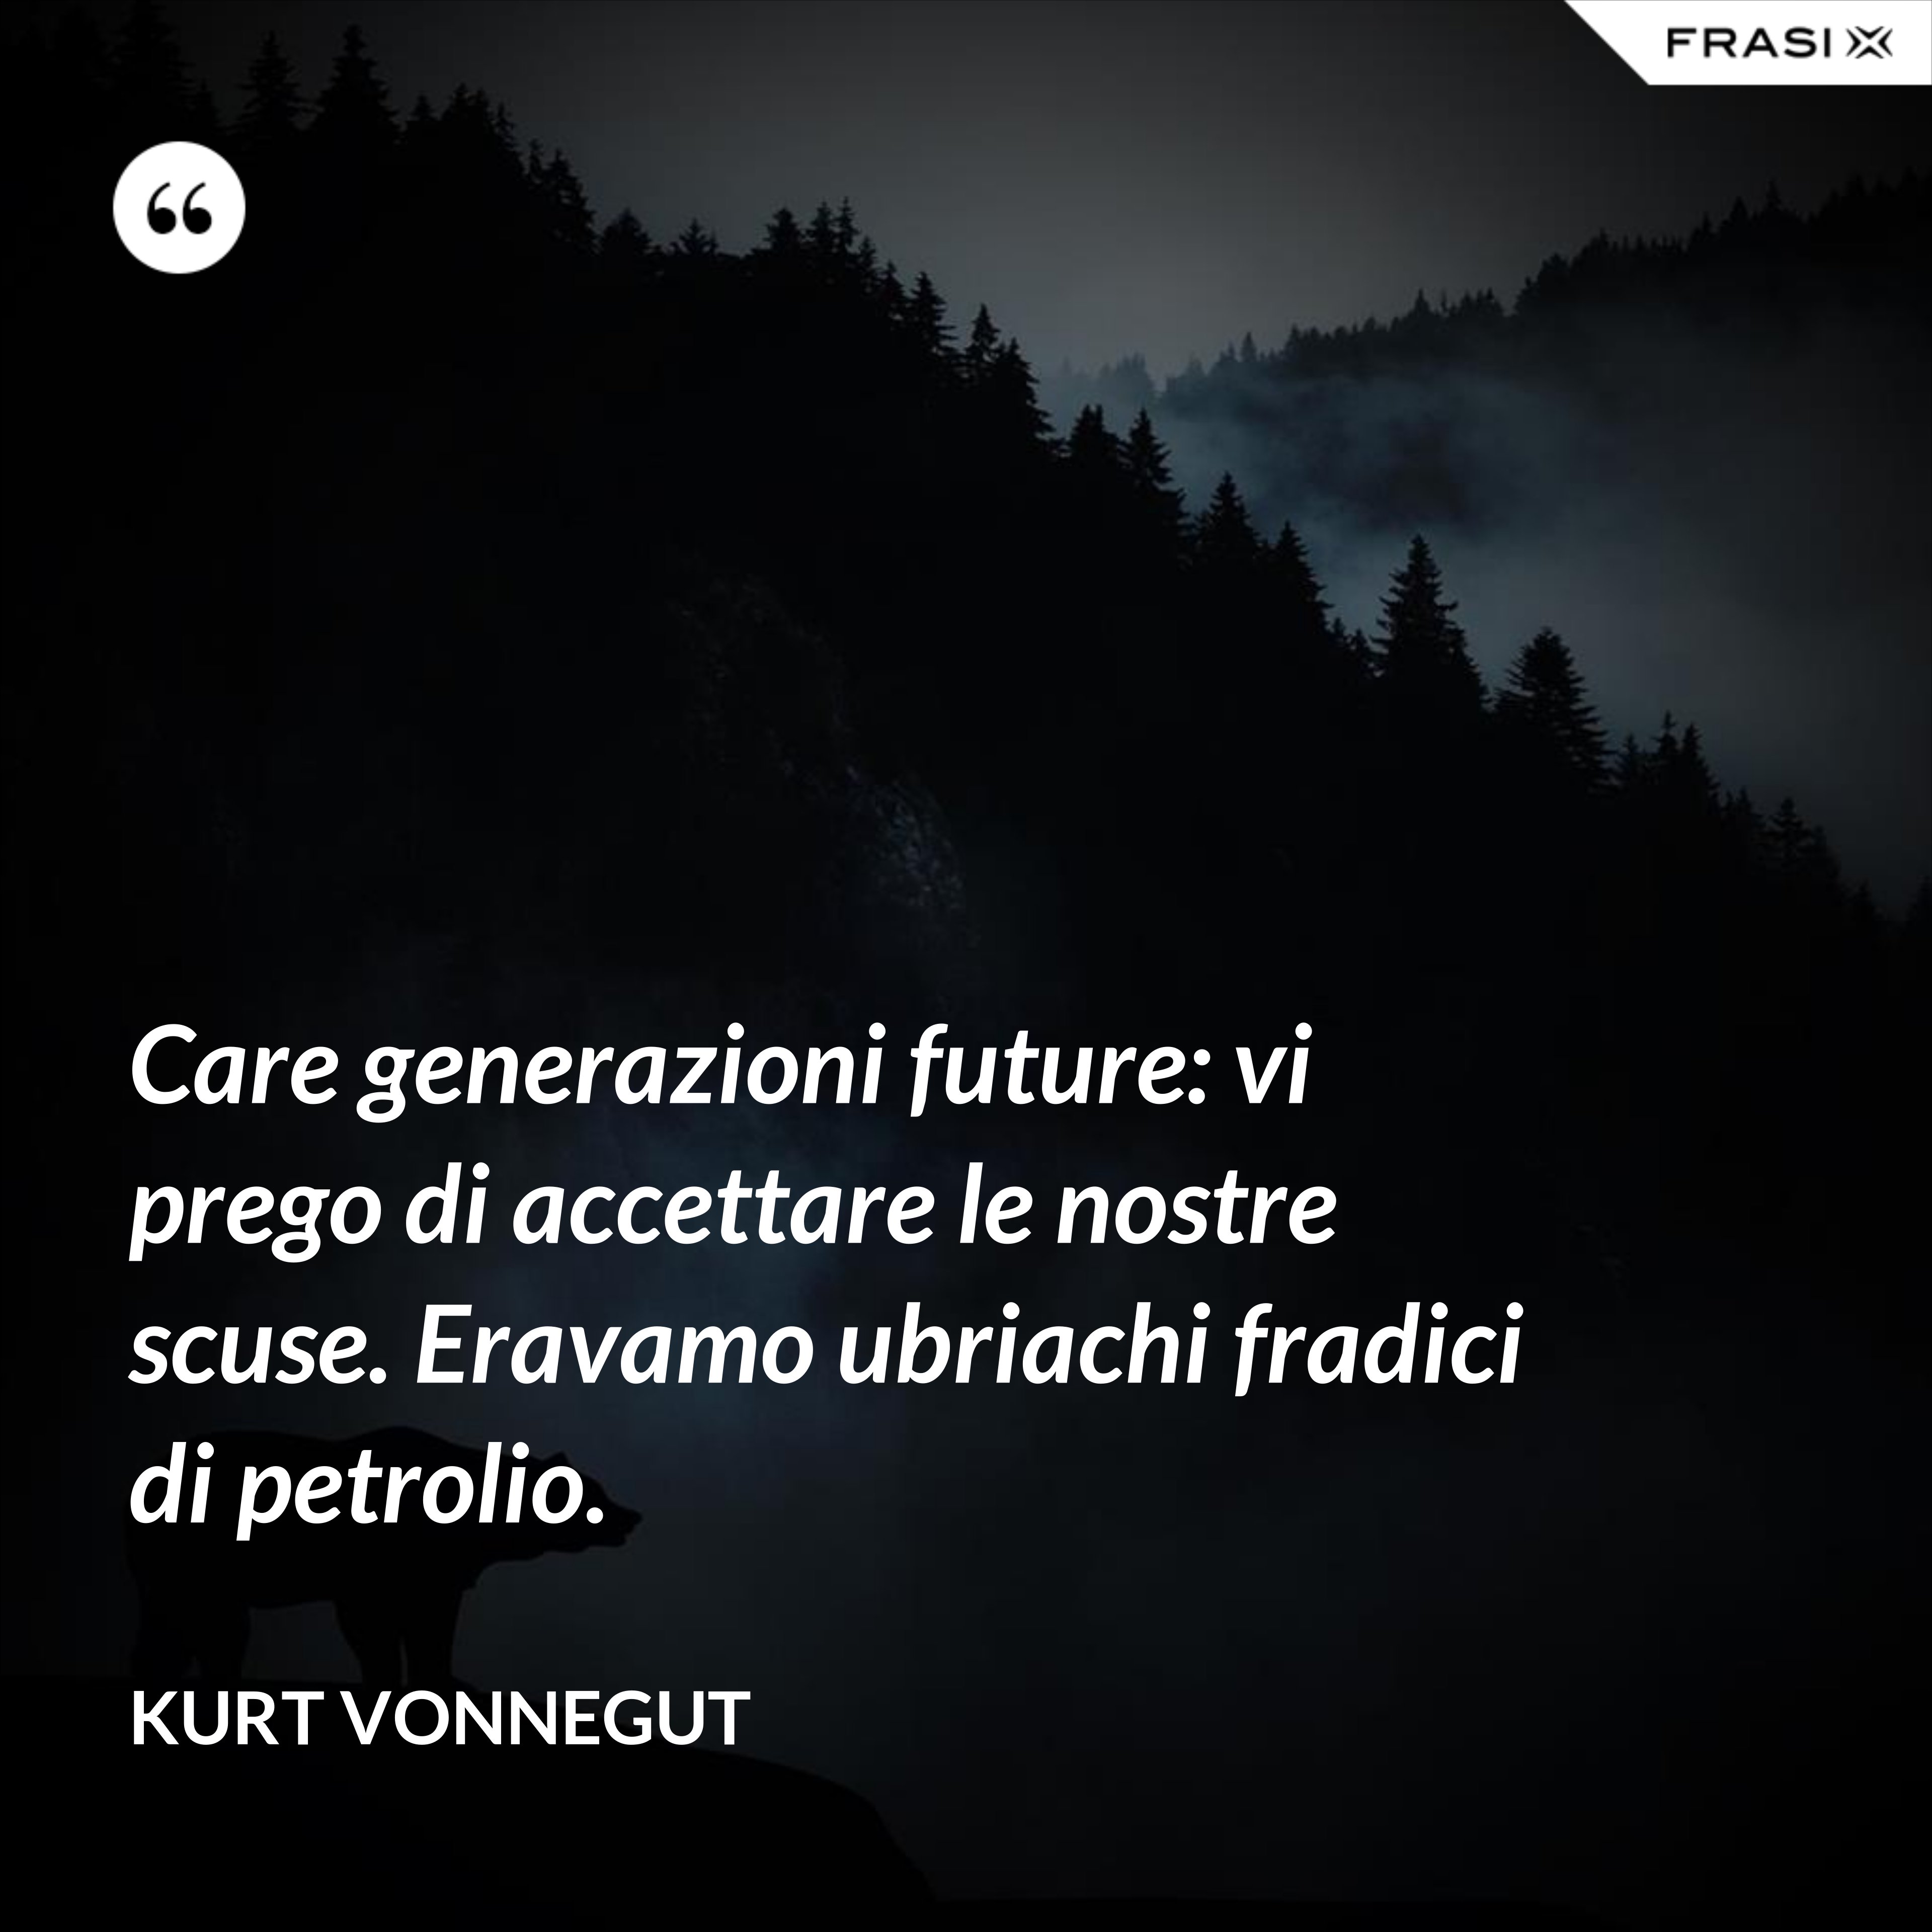 Care generazioni future: vi prego di accettare le nostre scuse. Eravamo ubriachi fradici di petrolio. - Kurt Vonnegut